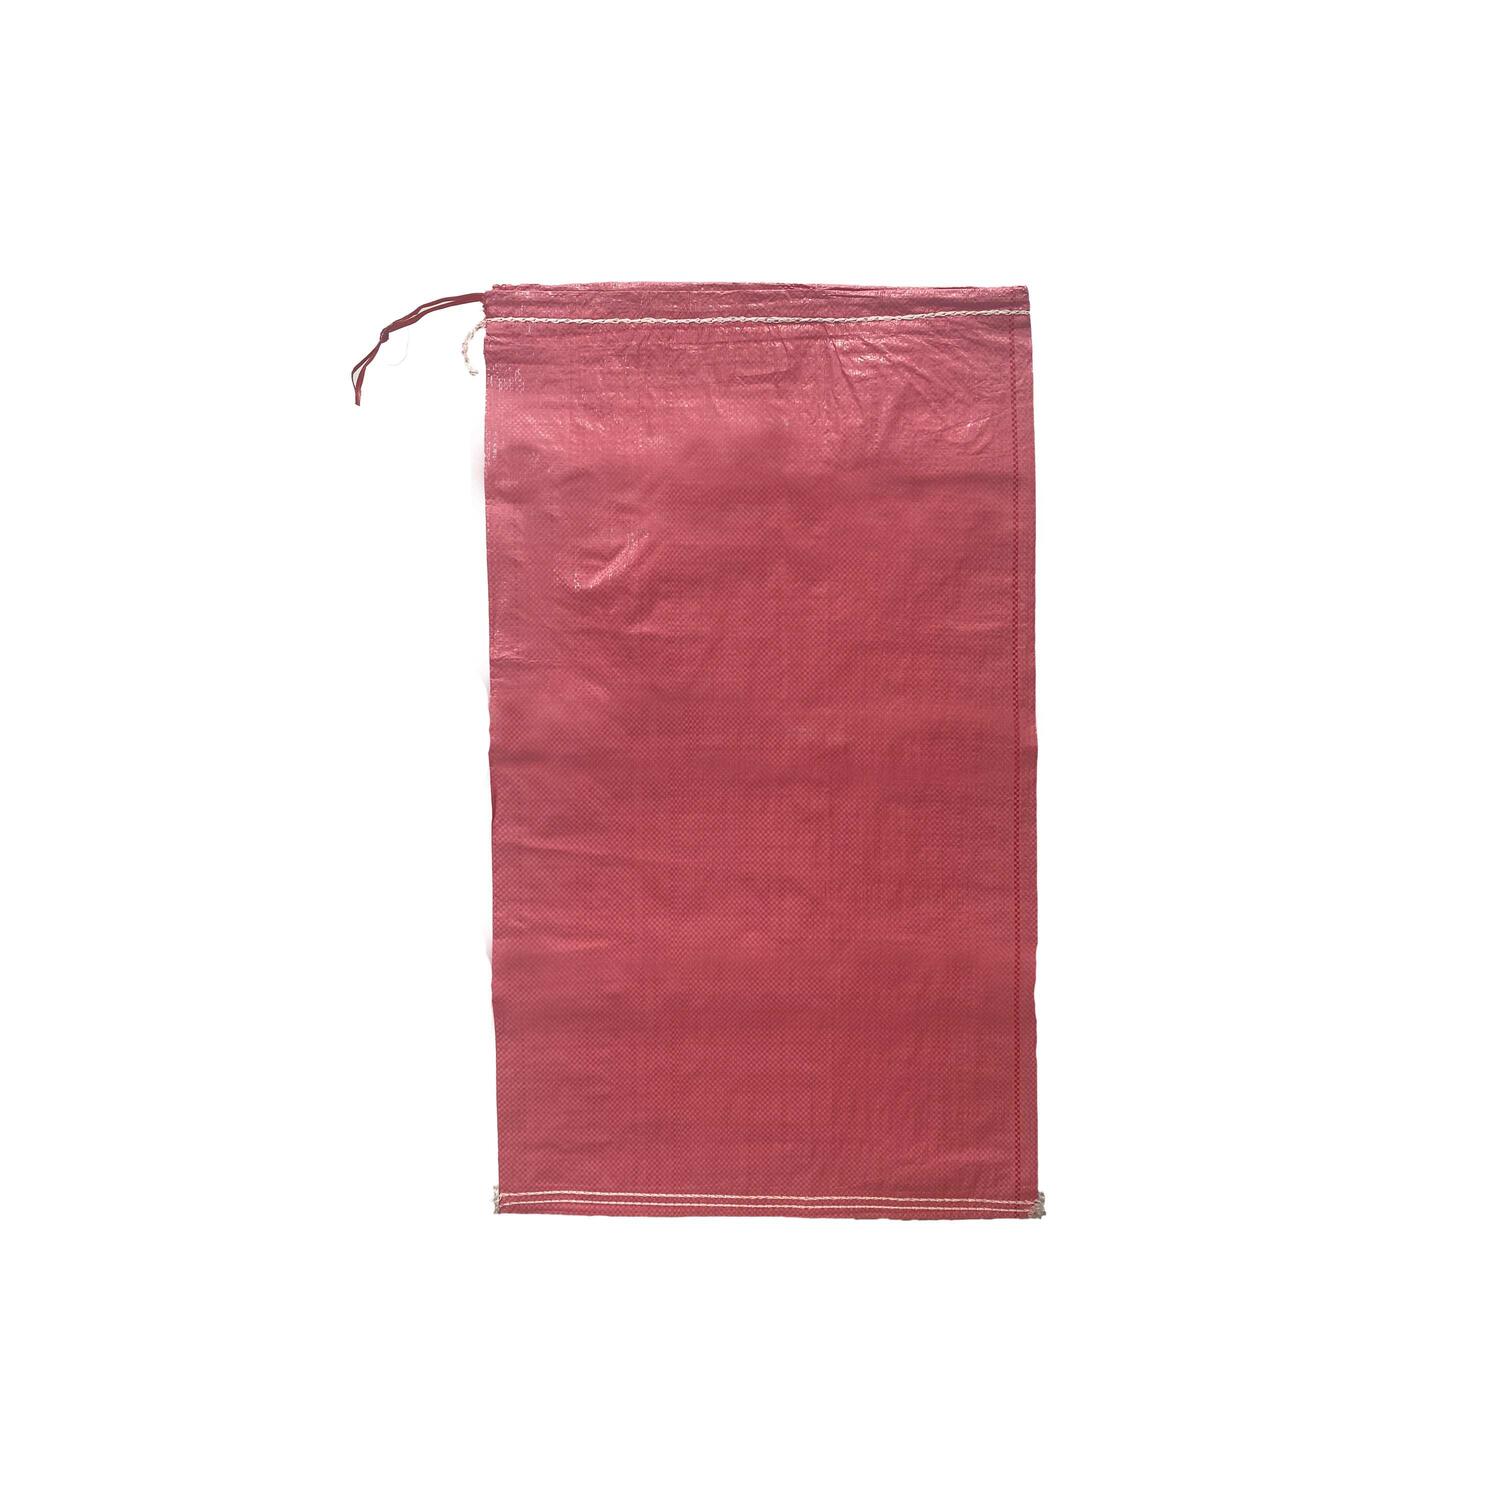 Schwerlastsack Gewebesack Hochwassersack Getreidesack Lagersack PP mit rotem Streifen, mit Band 500 x 800 mm 30 kg rosa